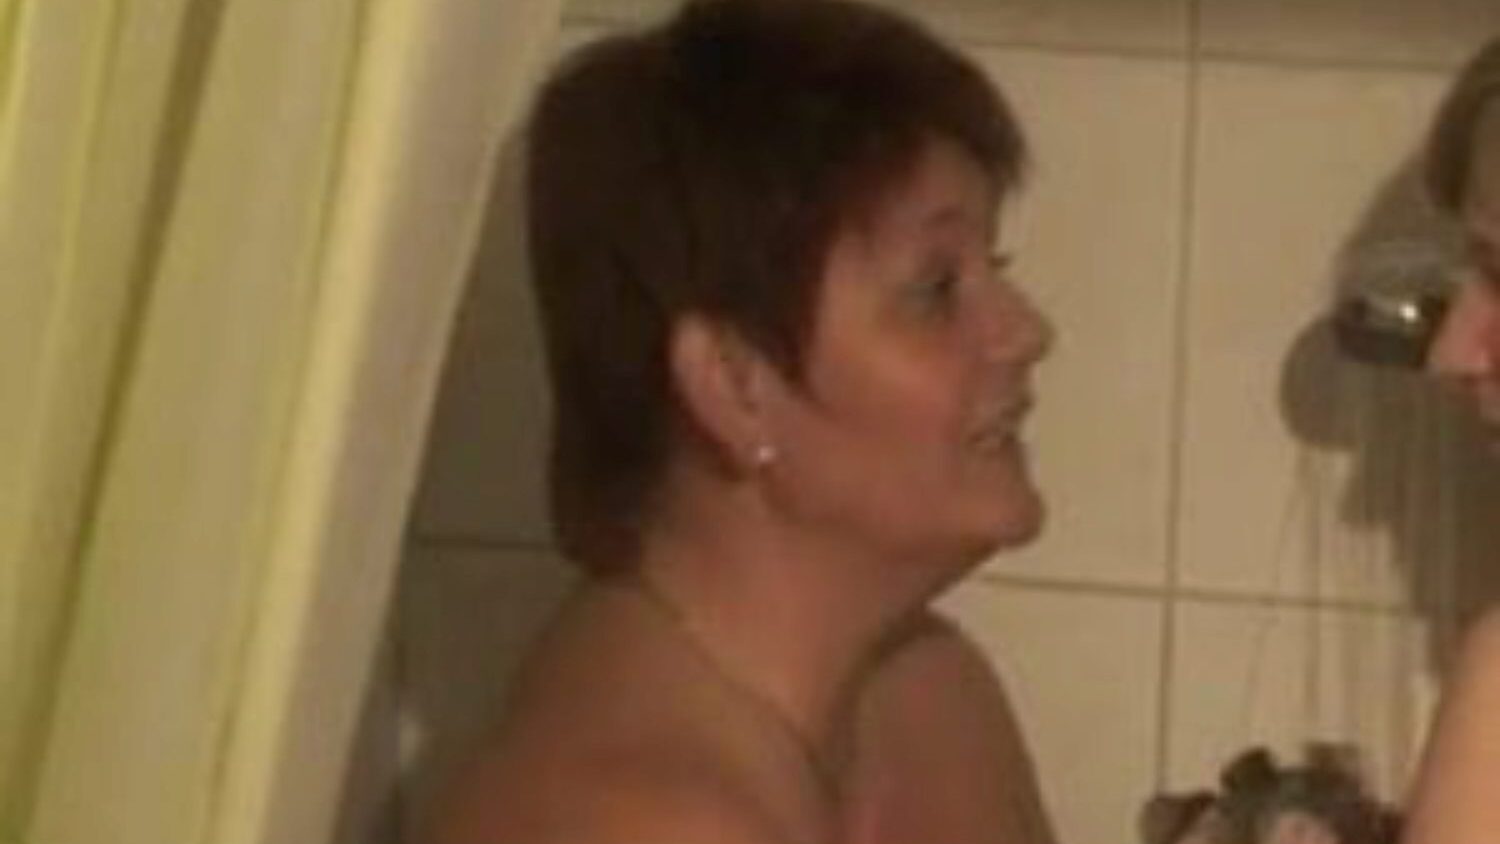 δύο bi-girls showering: δωρεάν λεσβιακό πορνό βίντεο 76 - xhamster παρακολουθήστε 2 bi-girls showering tube σκηνή ταινίας αγάπης δωρεάν για όλους στο xhamster, με την κυρίαρχη συλλογή της γερμανικής λεσβίας, μητέρα που θα ήθελα να γαμήσω & bbw πορνογραφία ακολουθίες ταινιών